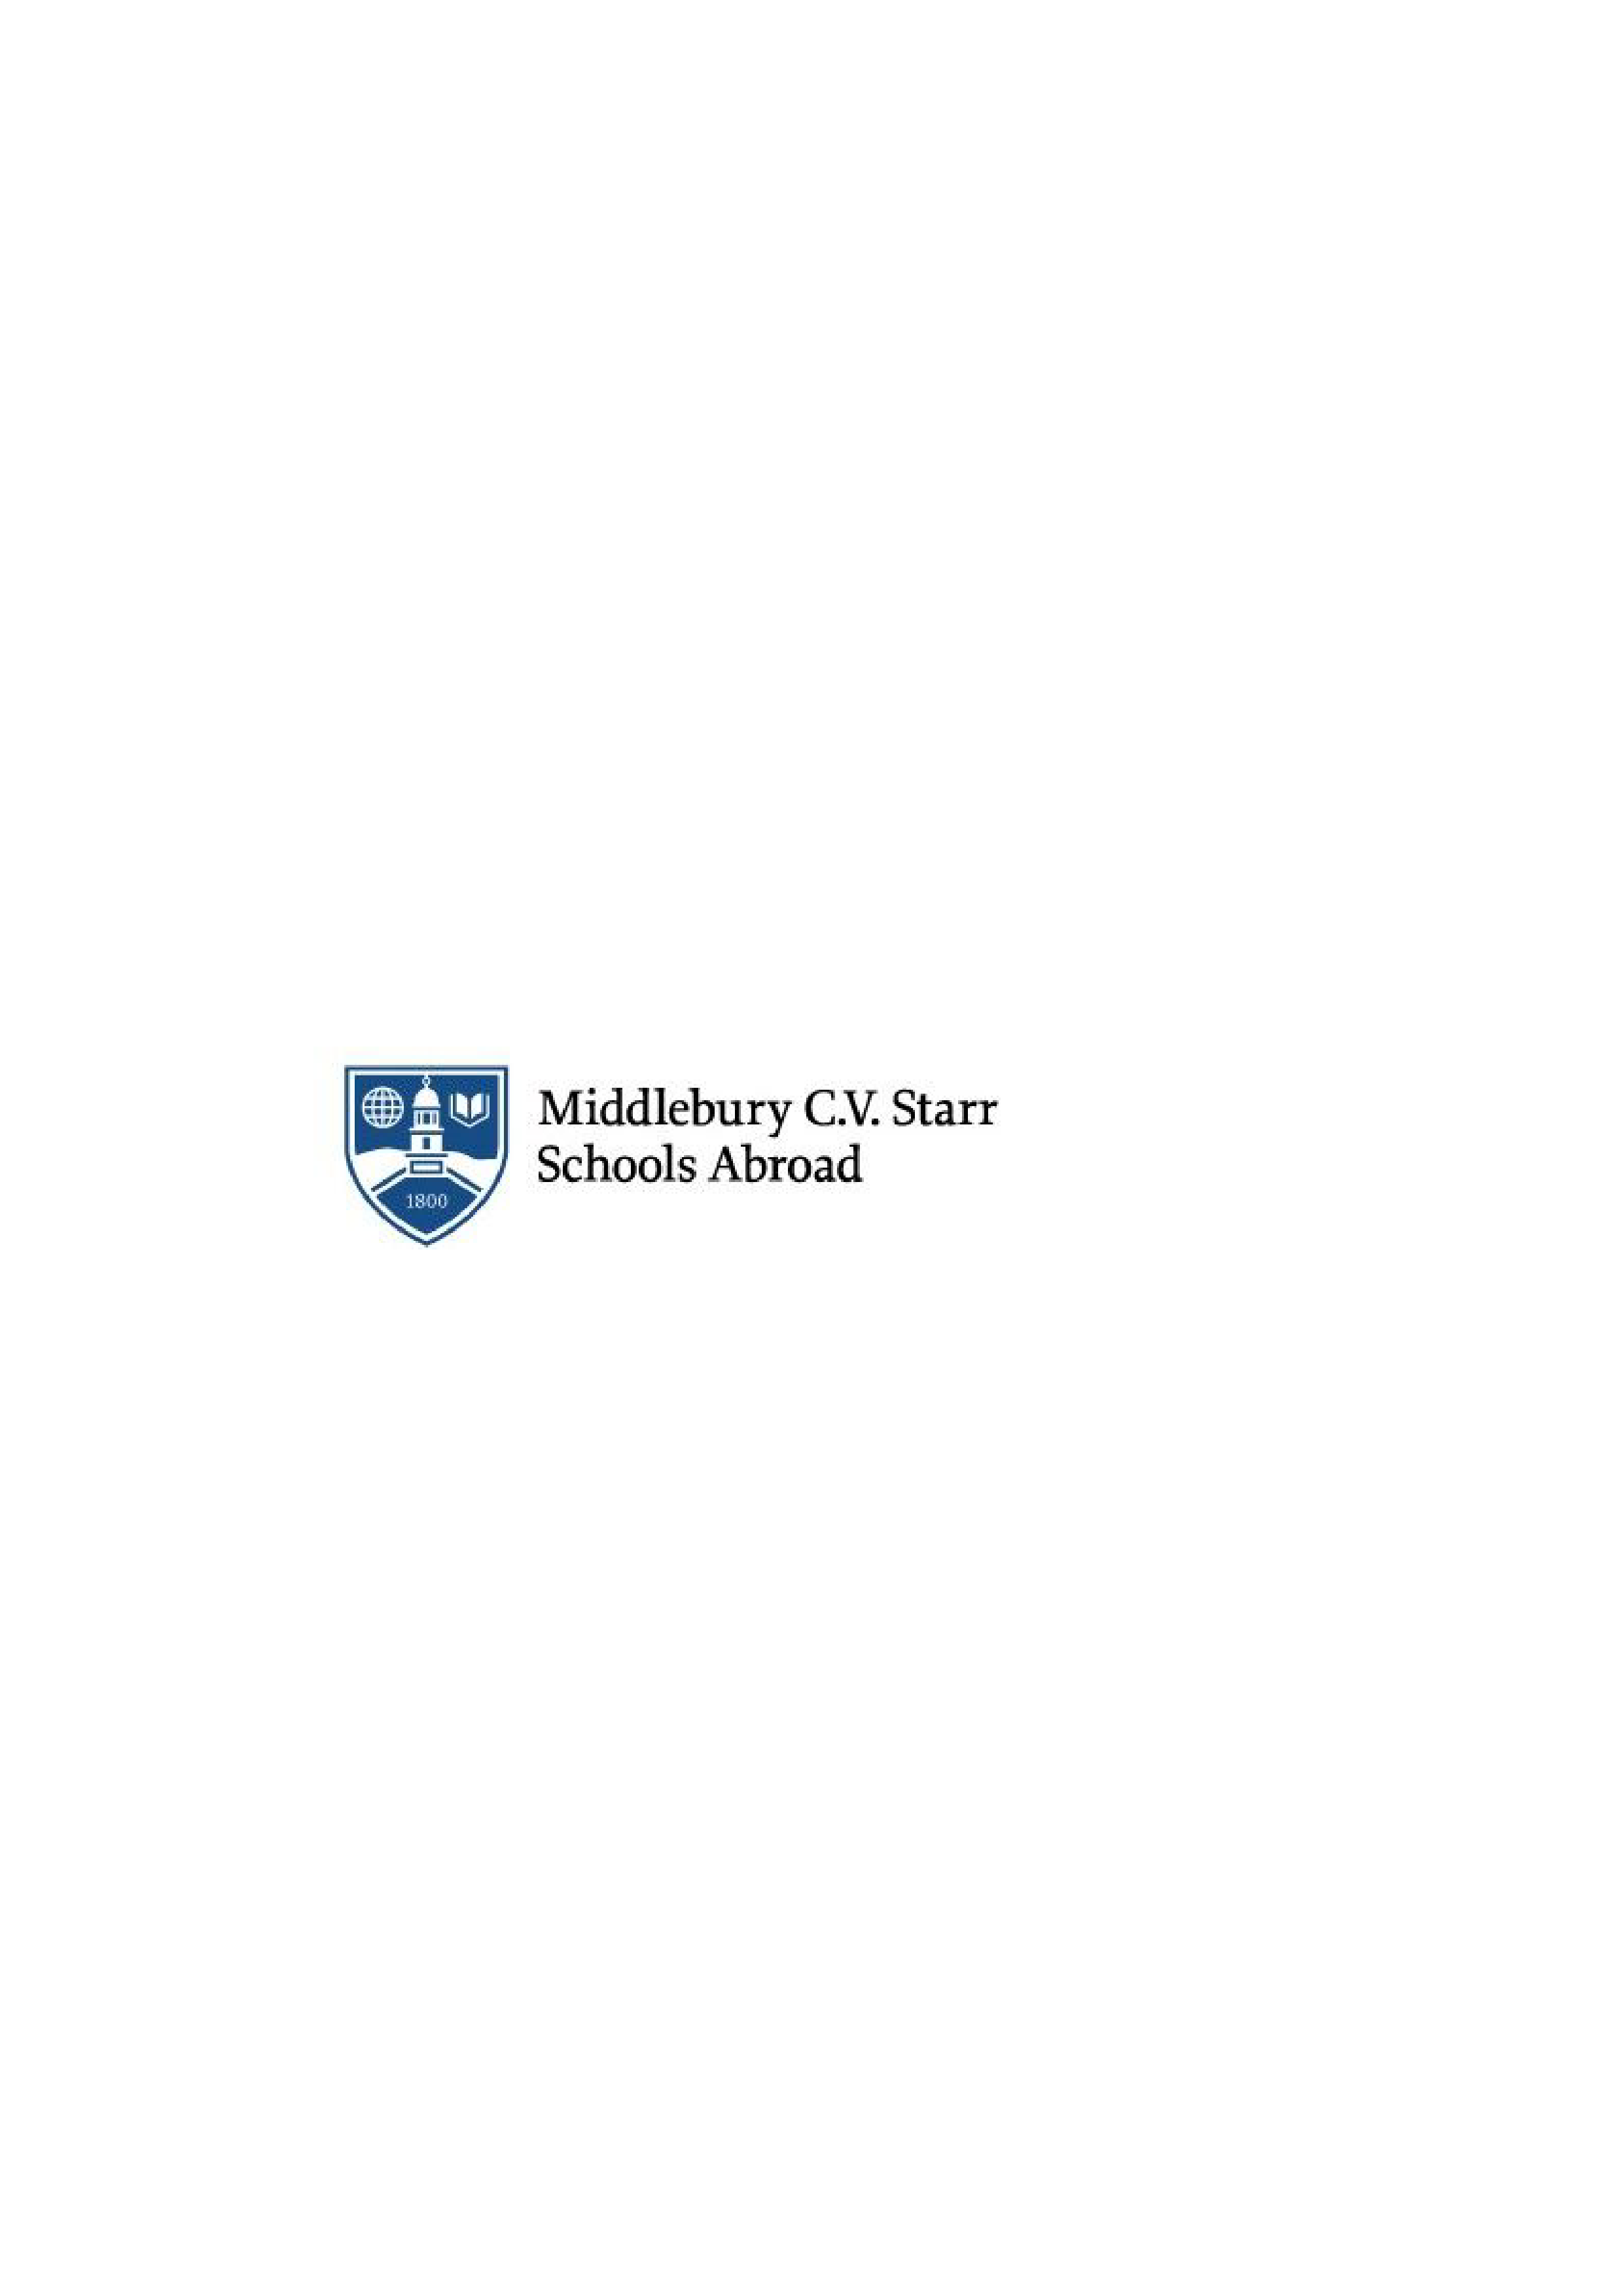 Tutor_innen zur akademischen Betreuung internationaler Studierender gesucht - Middlebury CV Starr School in Germany - Logo